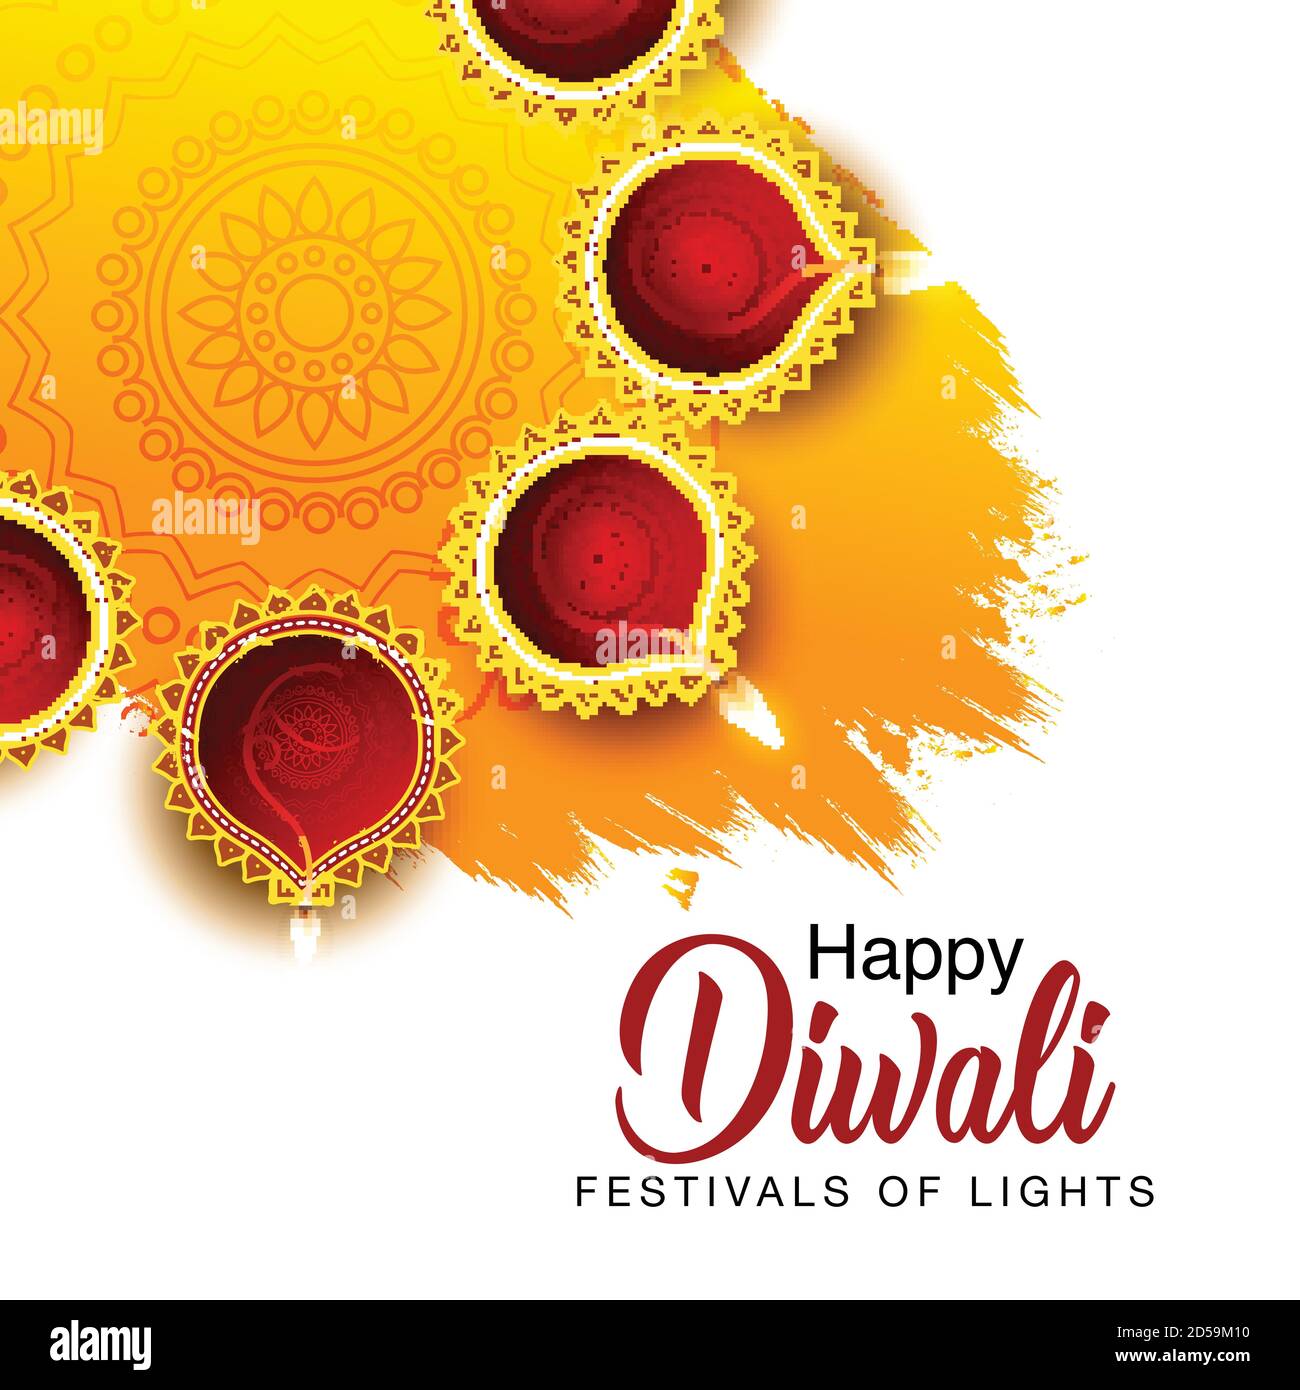 Lễ hội Diwali: Hãy chào đón Lễ hội Diwali - một trong những lễ hội lớn nhất của Ấn Độ, nơi mọi người cùng nhau ăn mừng và tỏa sáng niềm vui. Khám phá những nét đẹp văn hóa và truyền thống đầy màu sắc của lễ hội này qua những hình ảnh đầy thú vị.